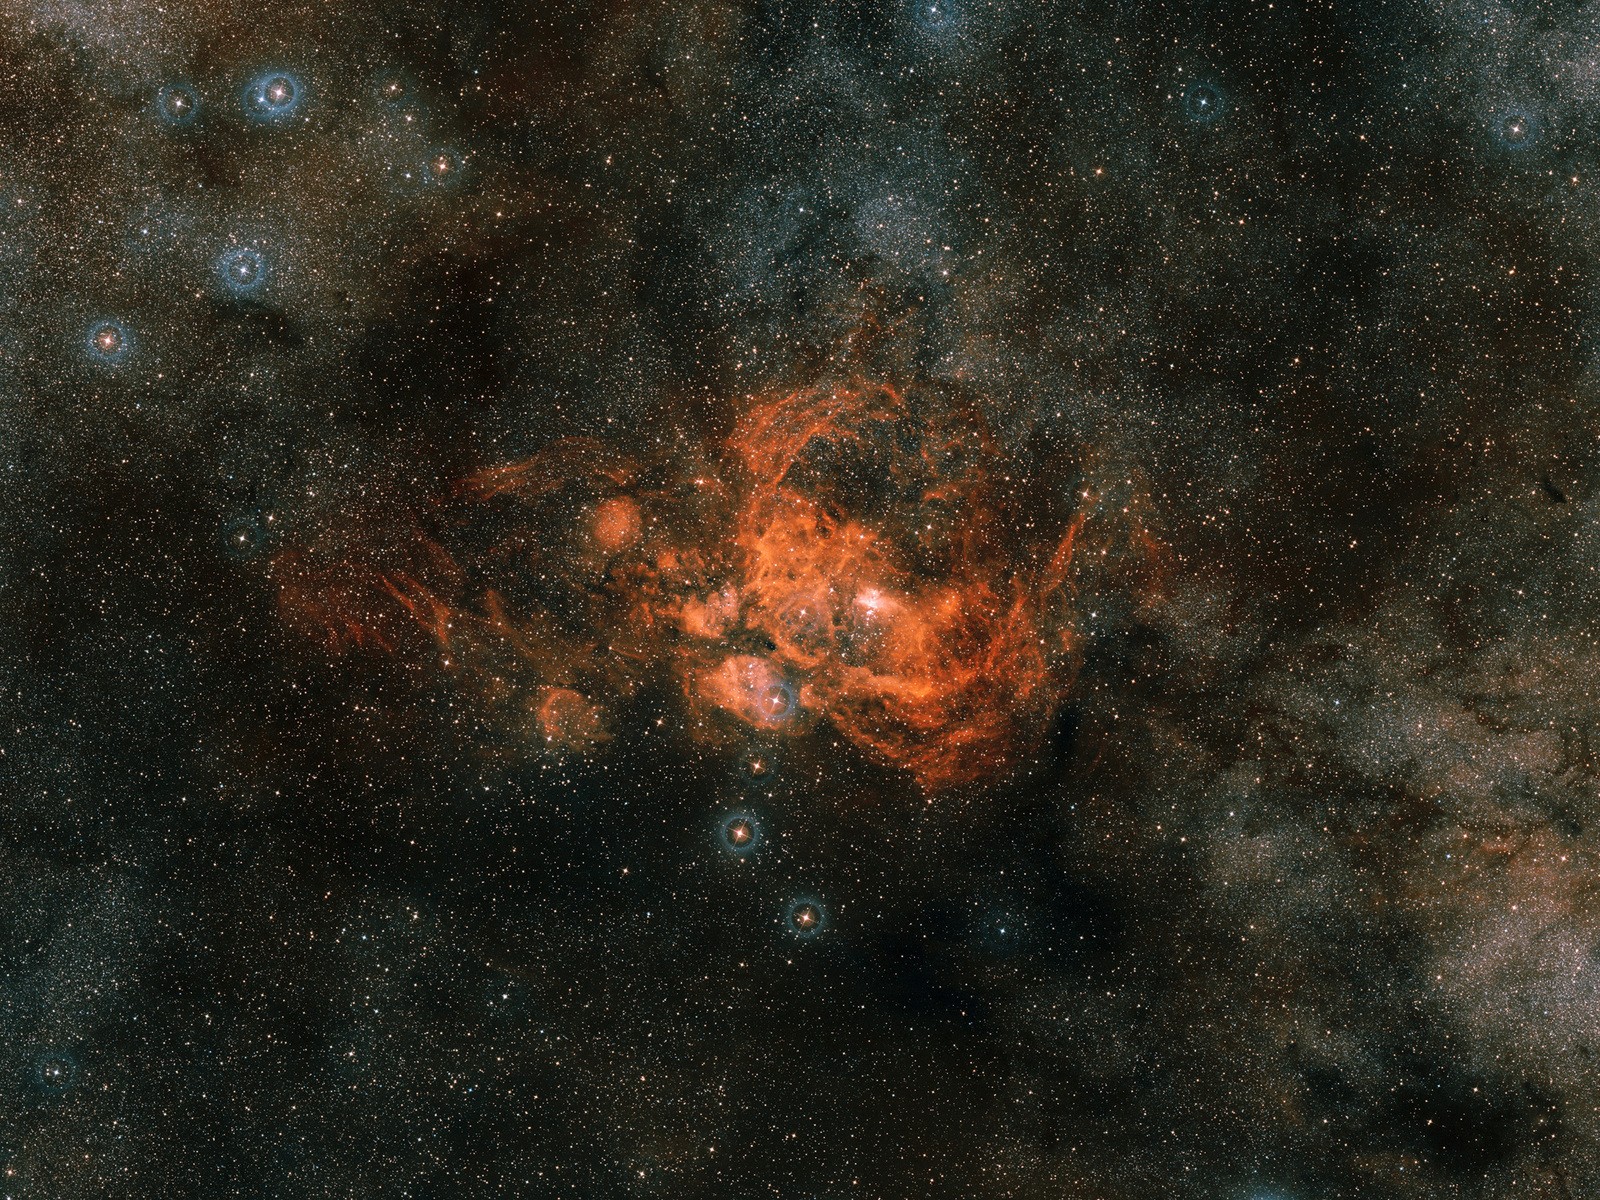 NGC 6537